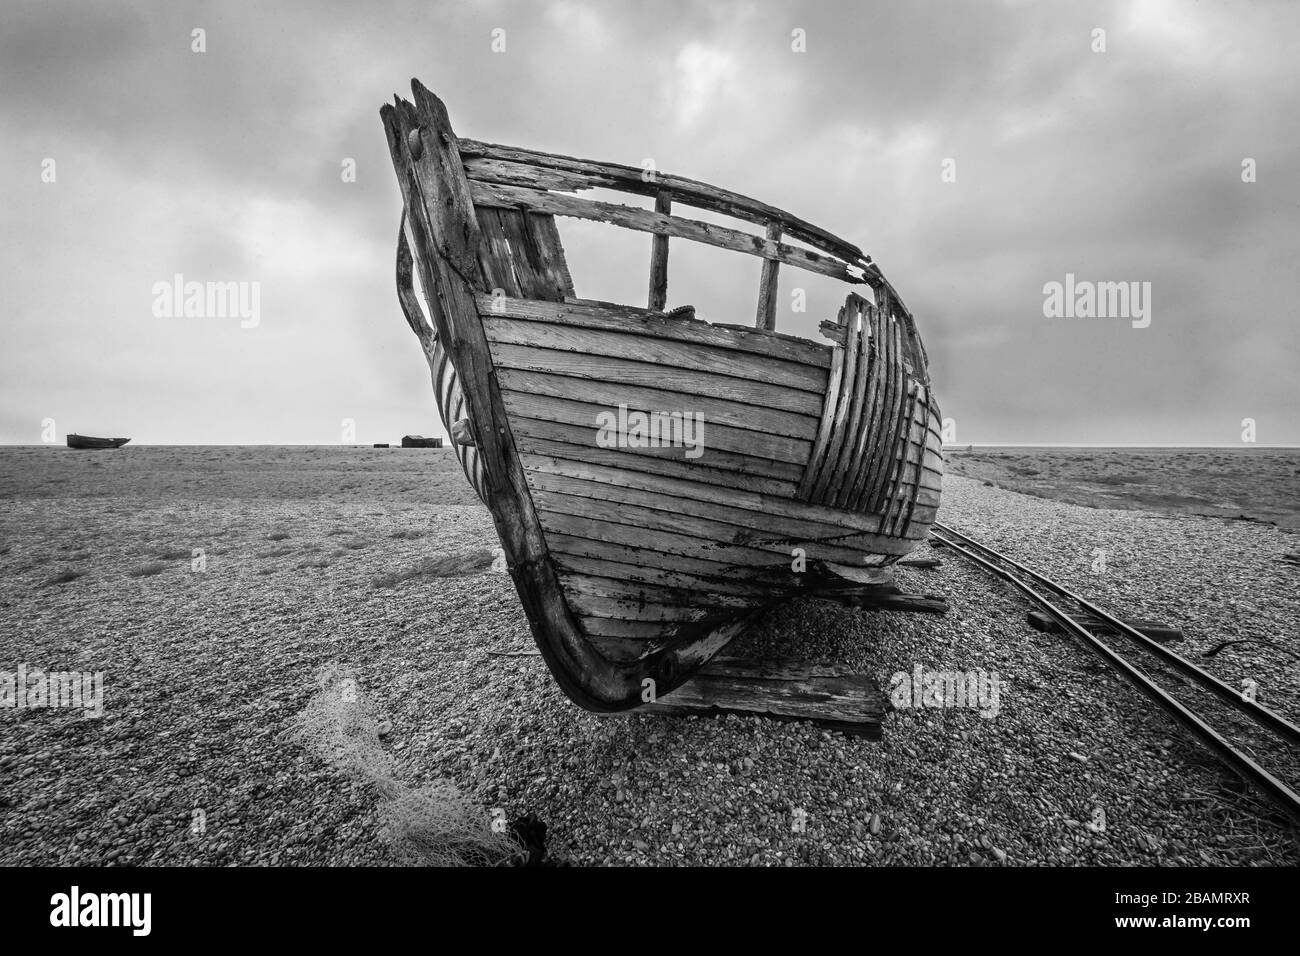 Un bateau sur la plage abandonnée de Dungeness en Angleterre où un monde en décomposition humains a laissé derrière lui. Spectaculaire et intransigeant, mais aussi magnifique. Banque D'Images